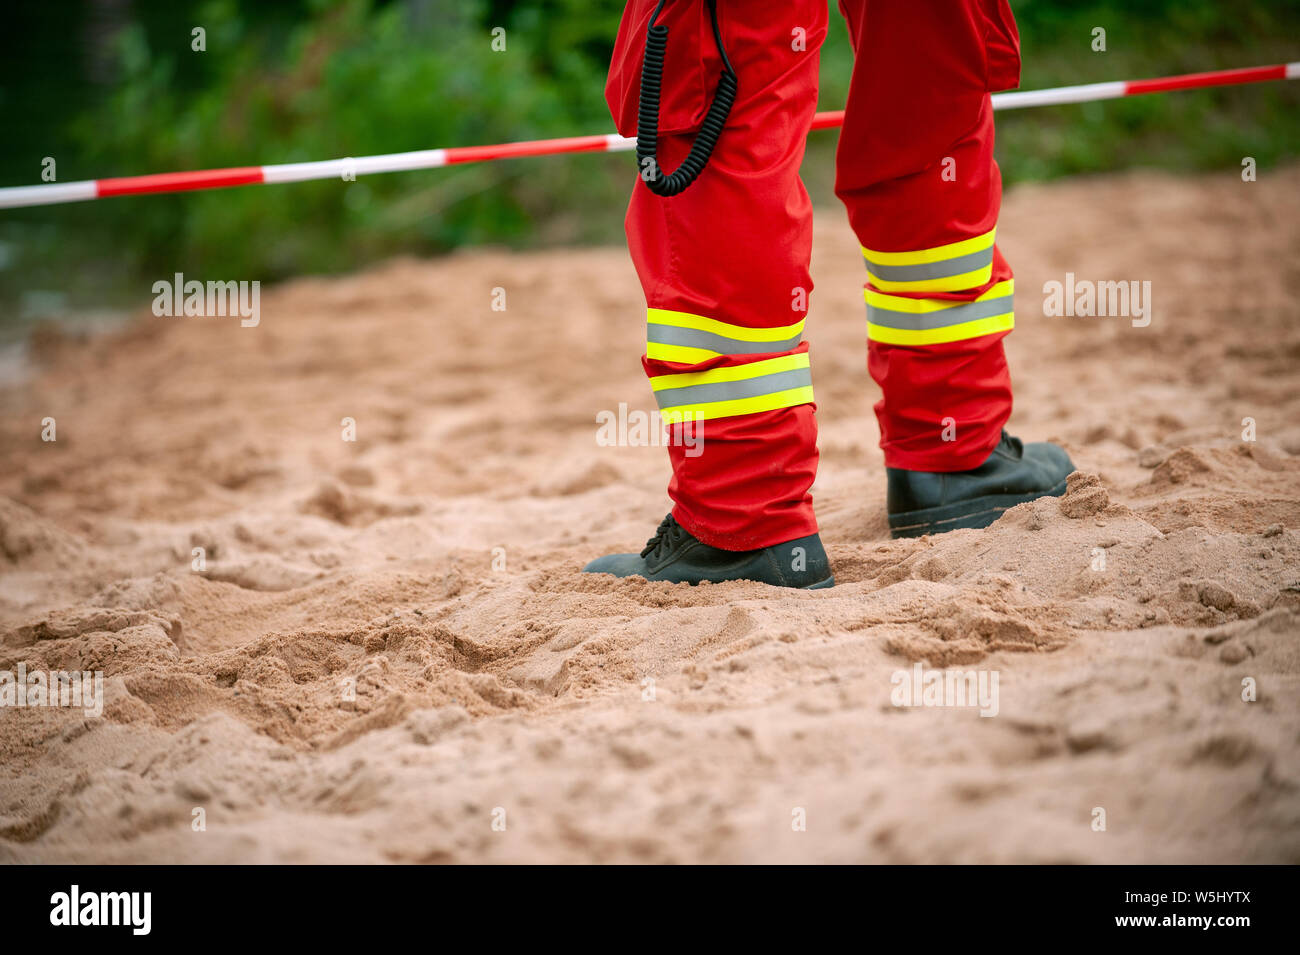 Beine der Retter standind auf dem Sand vor der roten und weißen Band. Rote Hosen mit reflektierenden Elementen. Stockfoto